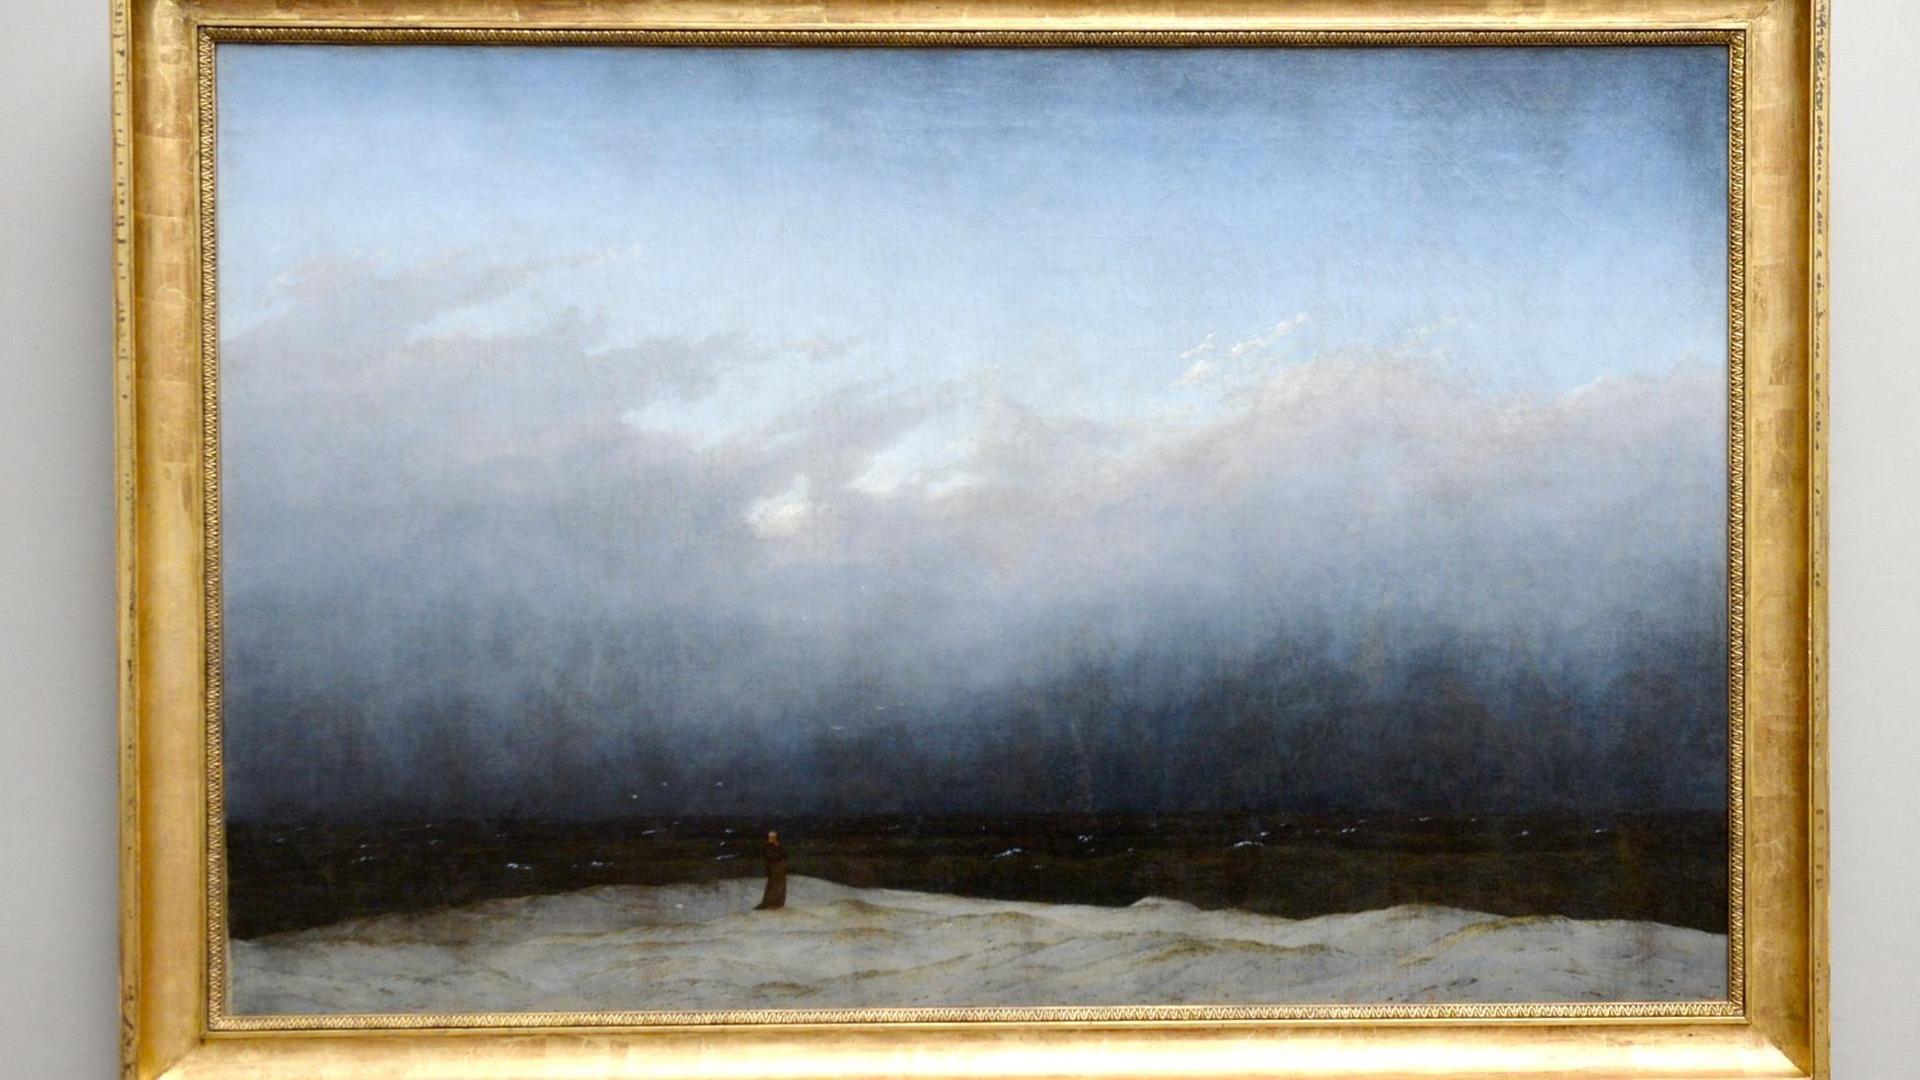 Das restaurierte Werk "Mönch am Meer" des Malers Caspar David Friedrichs wird am 21.01.2016 in der Alten Nationalgalerie in Berlin präsentiert.